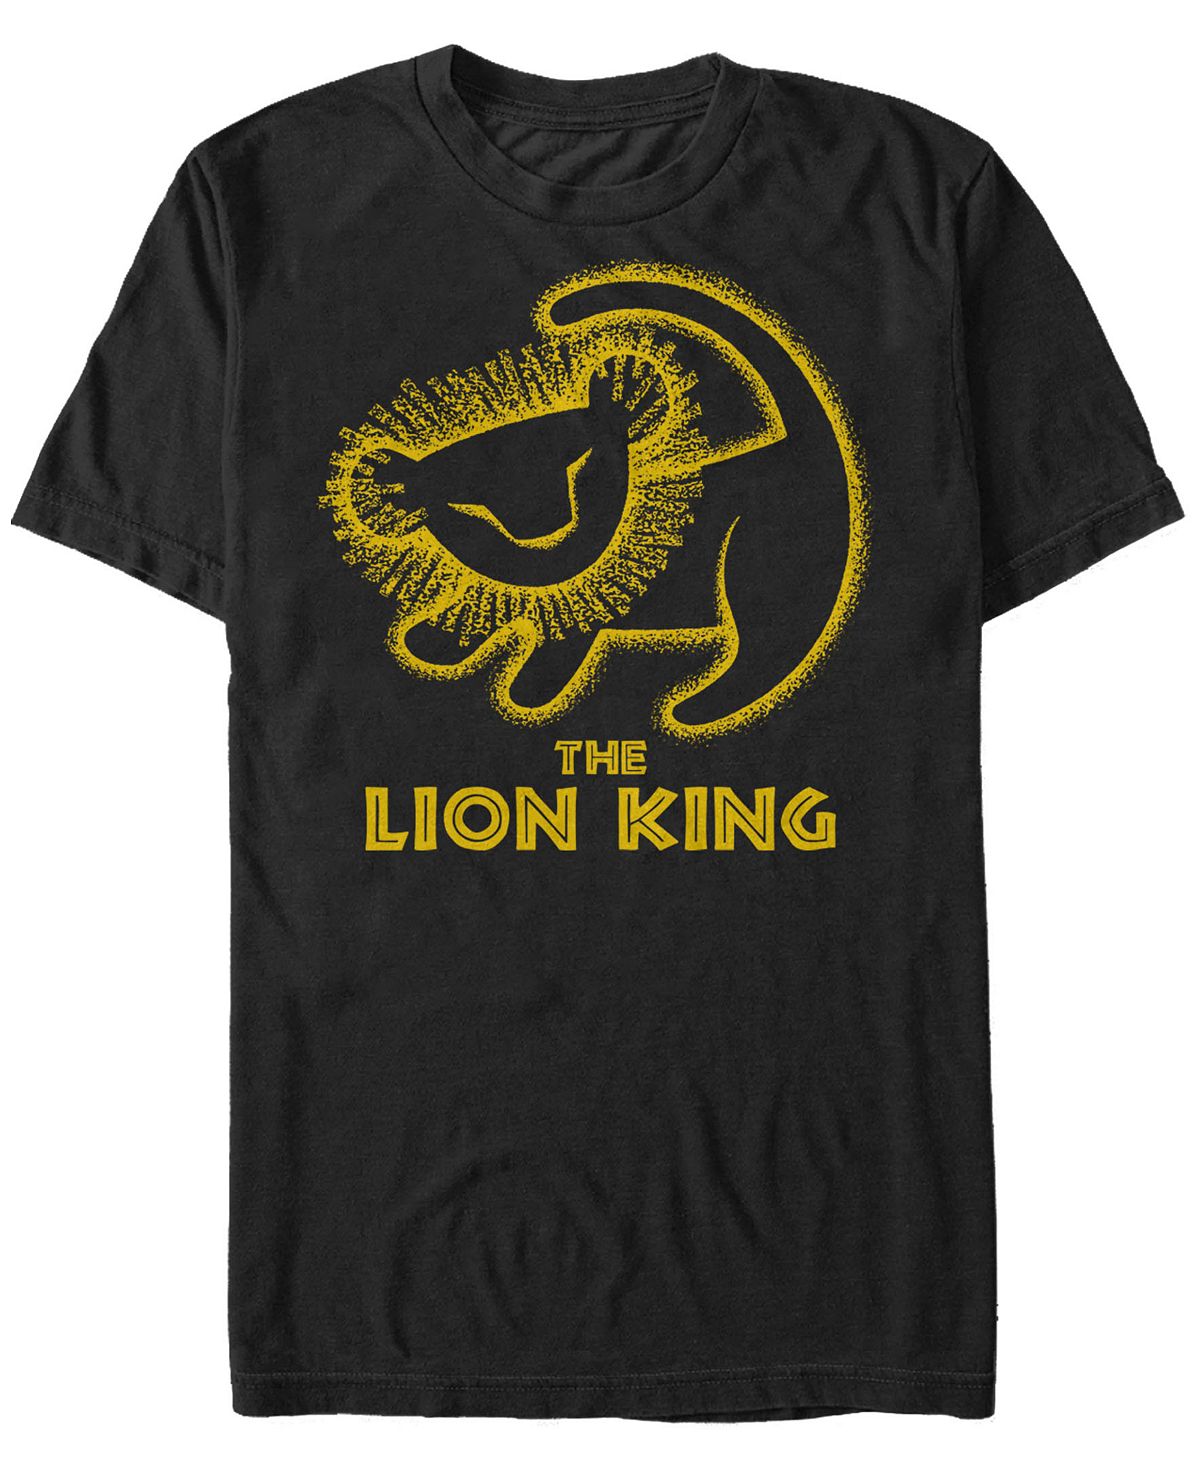 Мужская футболка с коротким рукавом disney king lion simba cave painting Fifth Sun, черный фотографии